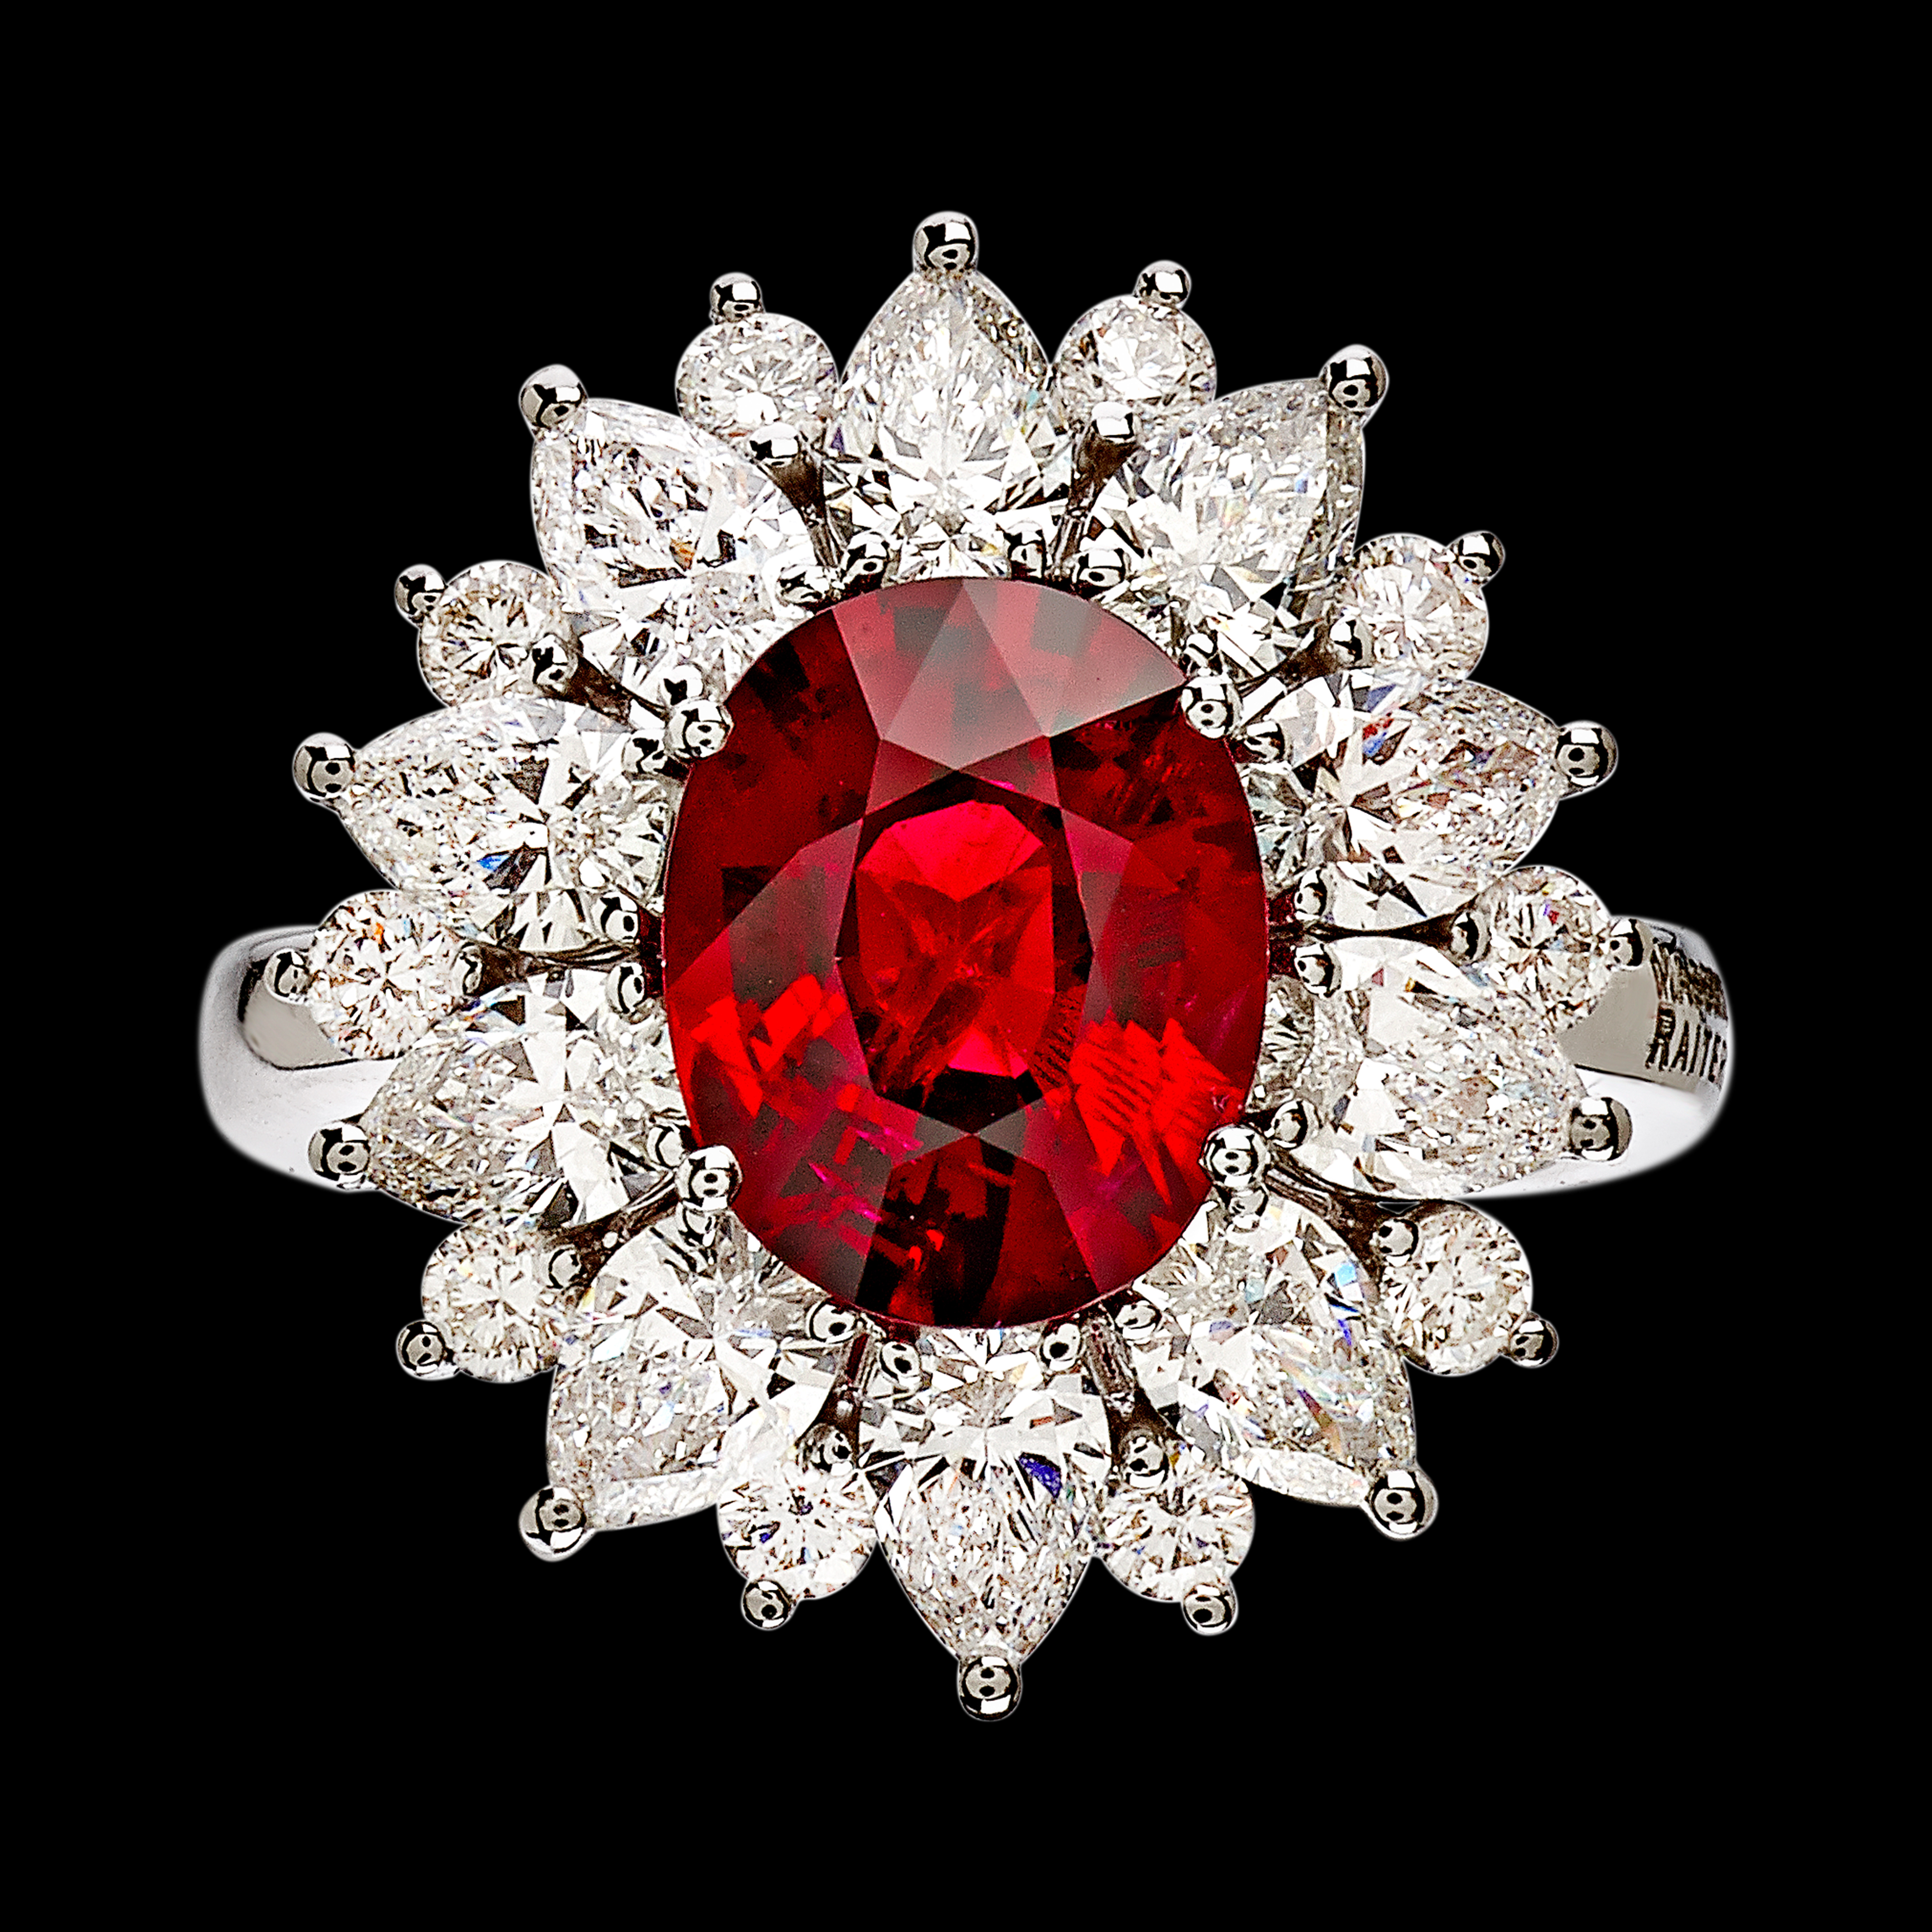 AN3388RB massimo raiteri pigeon blood no heat ring jewelry exclusive diamonds classic  anello diamanti sangue di piccione non scaldato naturale